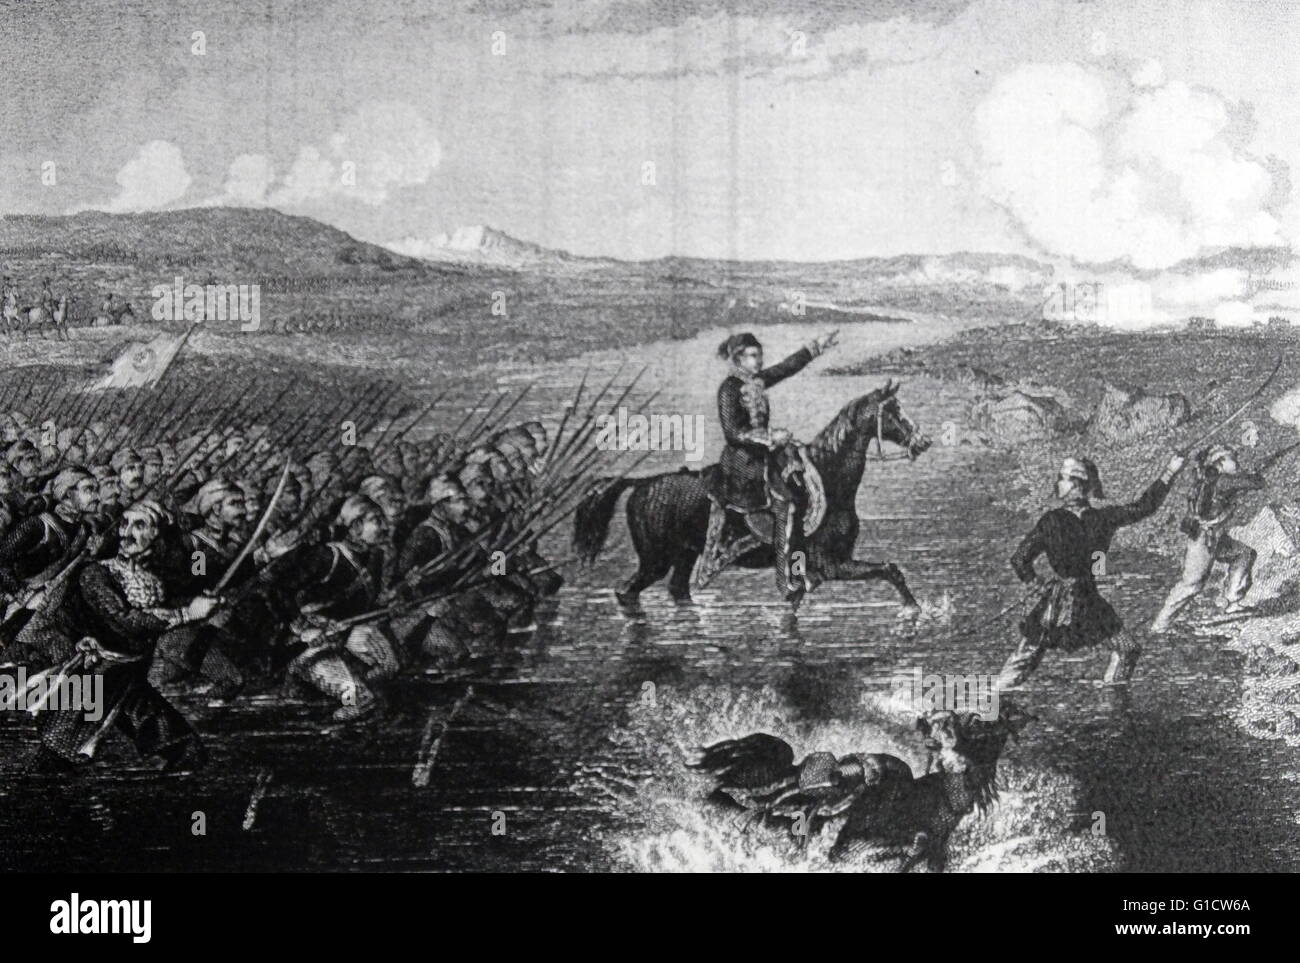 Gravur Omar Pasha Latas (1806-1871) eine Ottomane allgemeine Darstellung und Gouverneur, seine Truppen über die Ingour während des Krimkrieges führt. Datiert 1855 Stockfoto